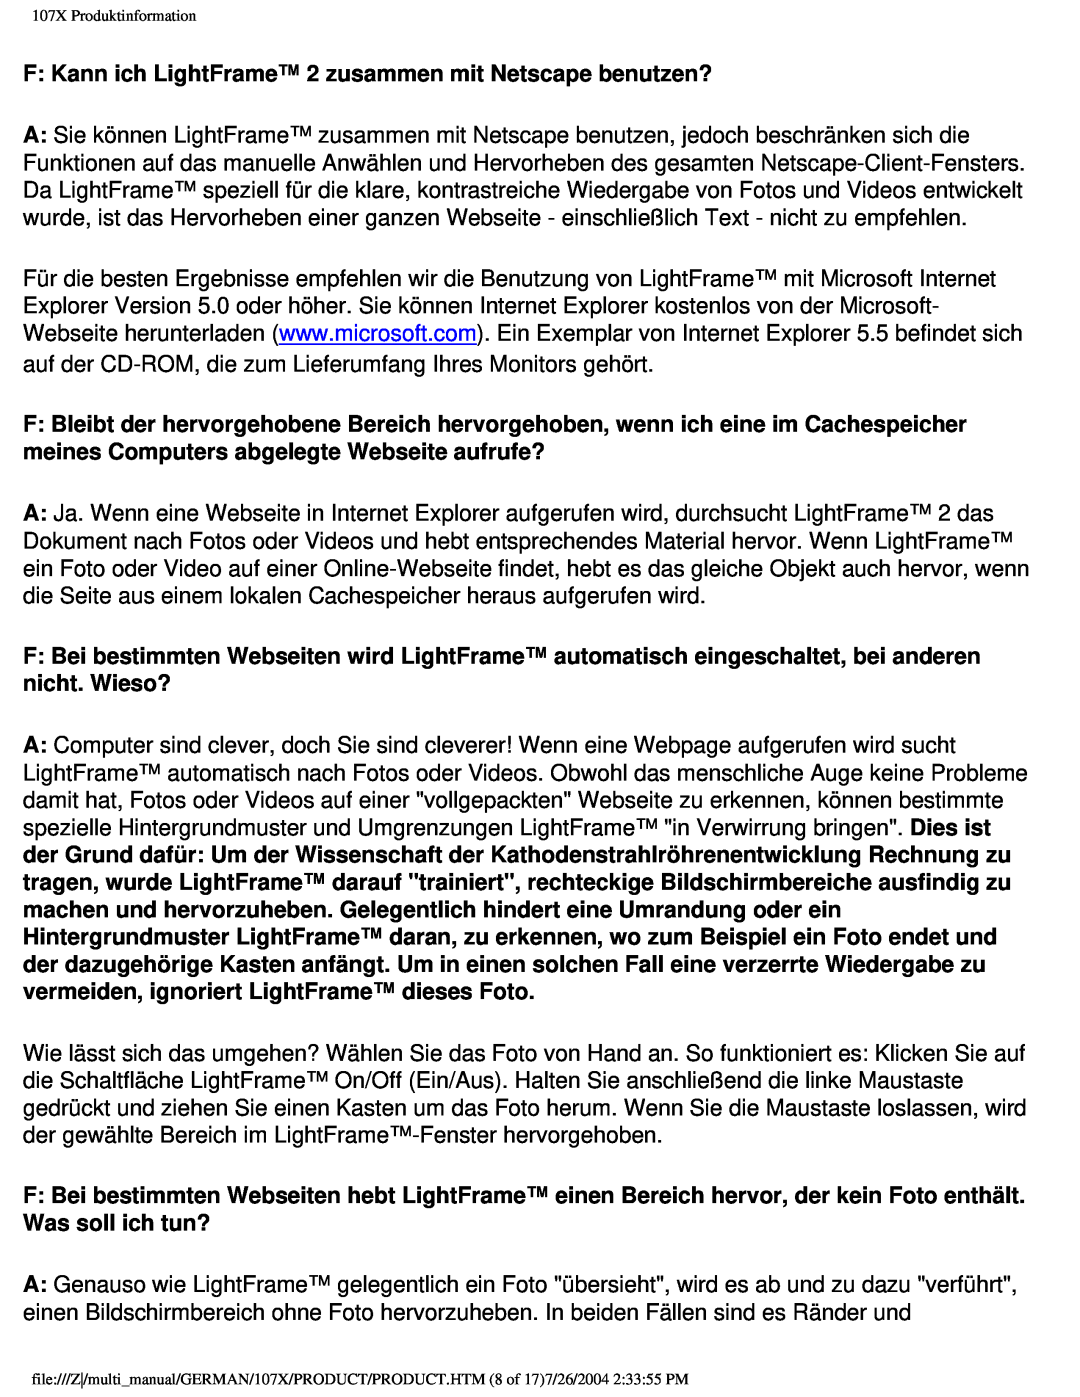 Philips 107X2 user manual F Kann ich LightFrame 2 zusammen mit Netscape benutzen? 